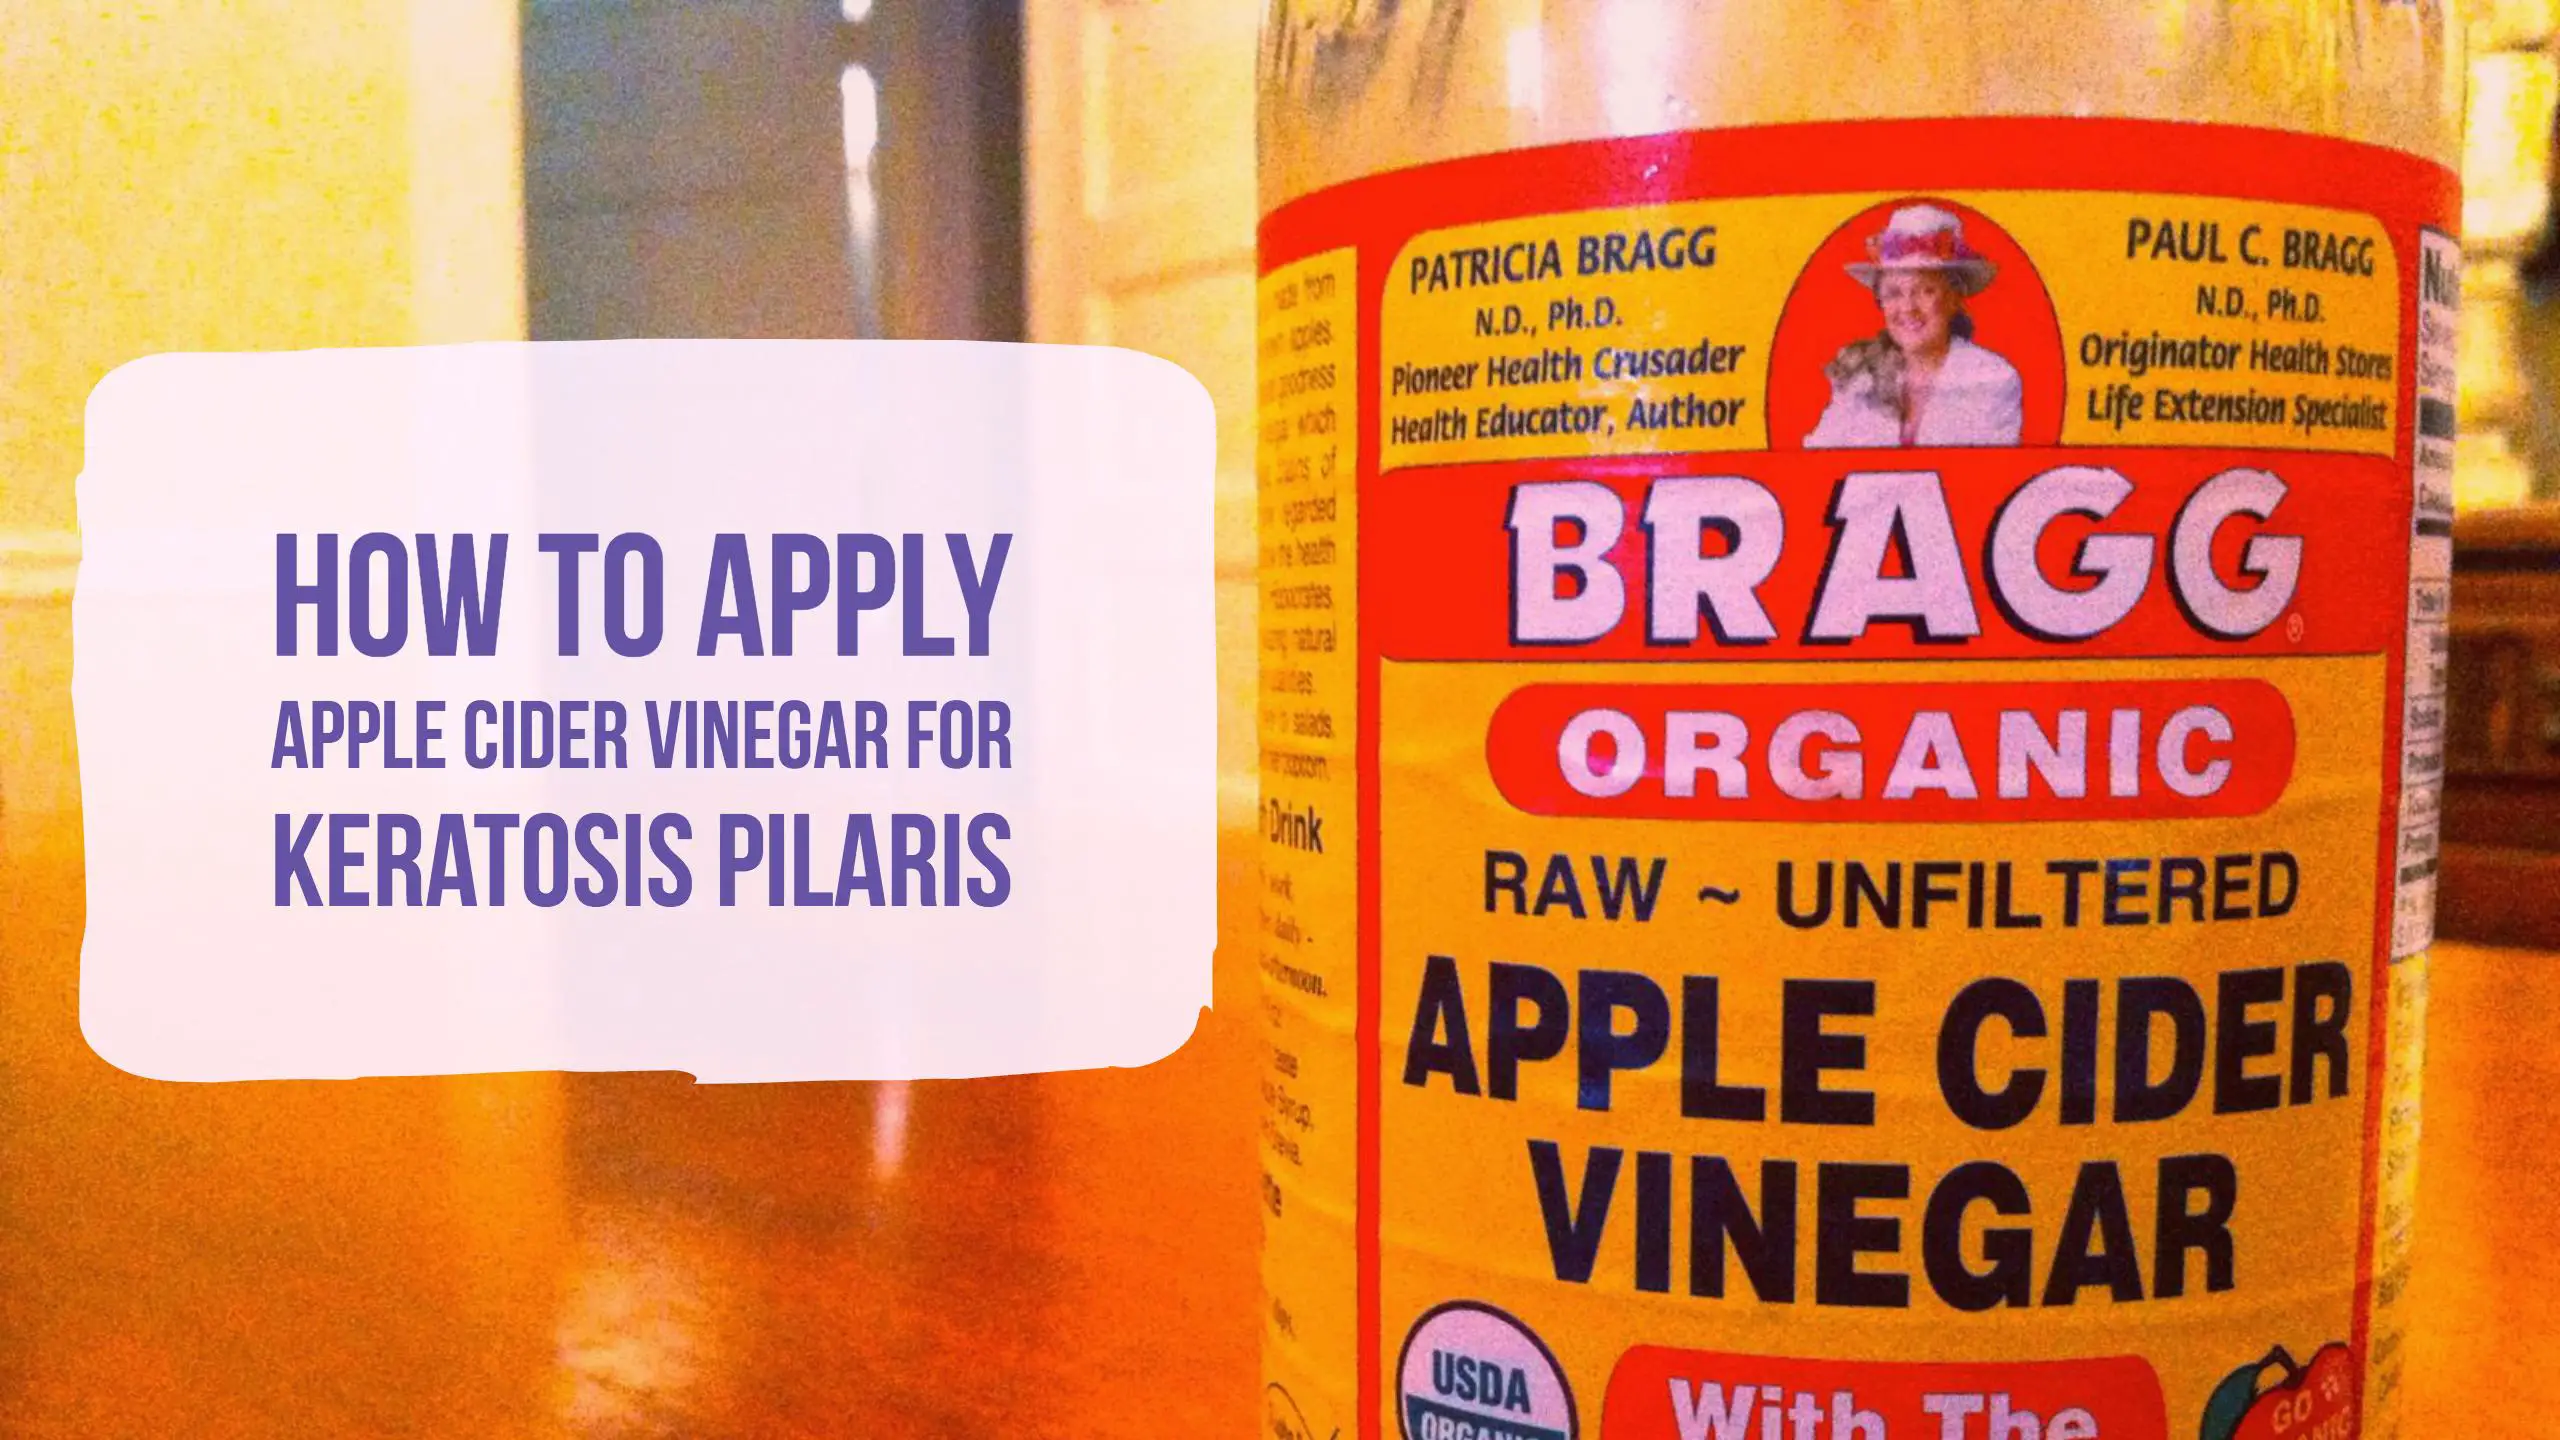 Apple Cider Vinegar For Keratosis Pilaris